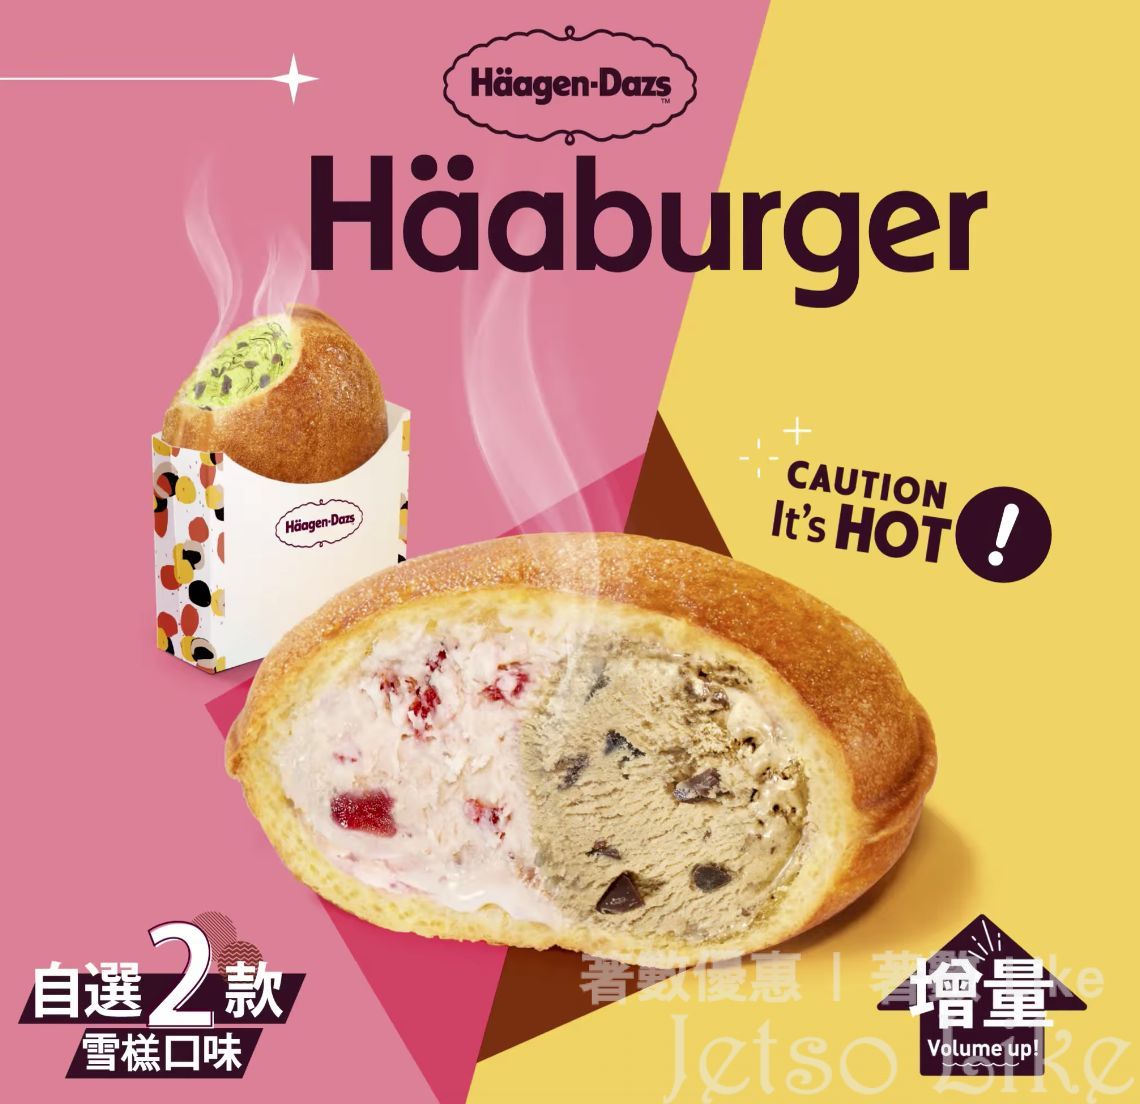 Häagen-Dazs 全新升級Häaburger登場 會員仲賞你免費嘆咖啡